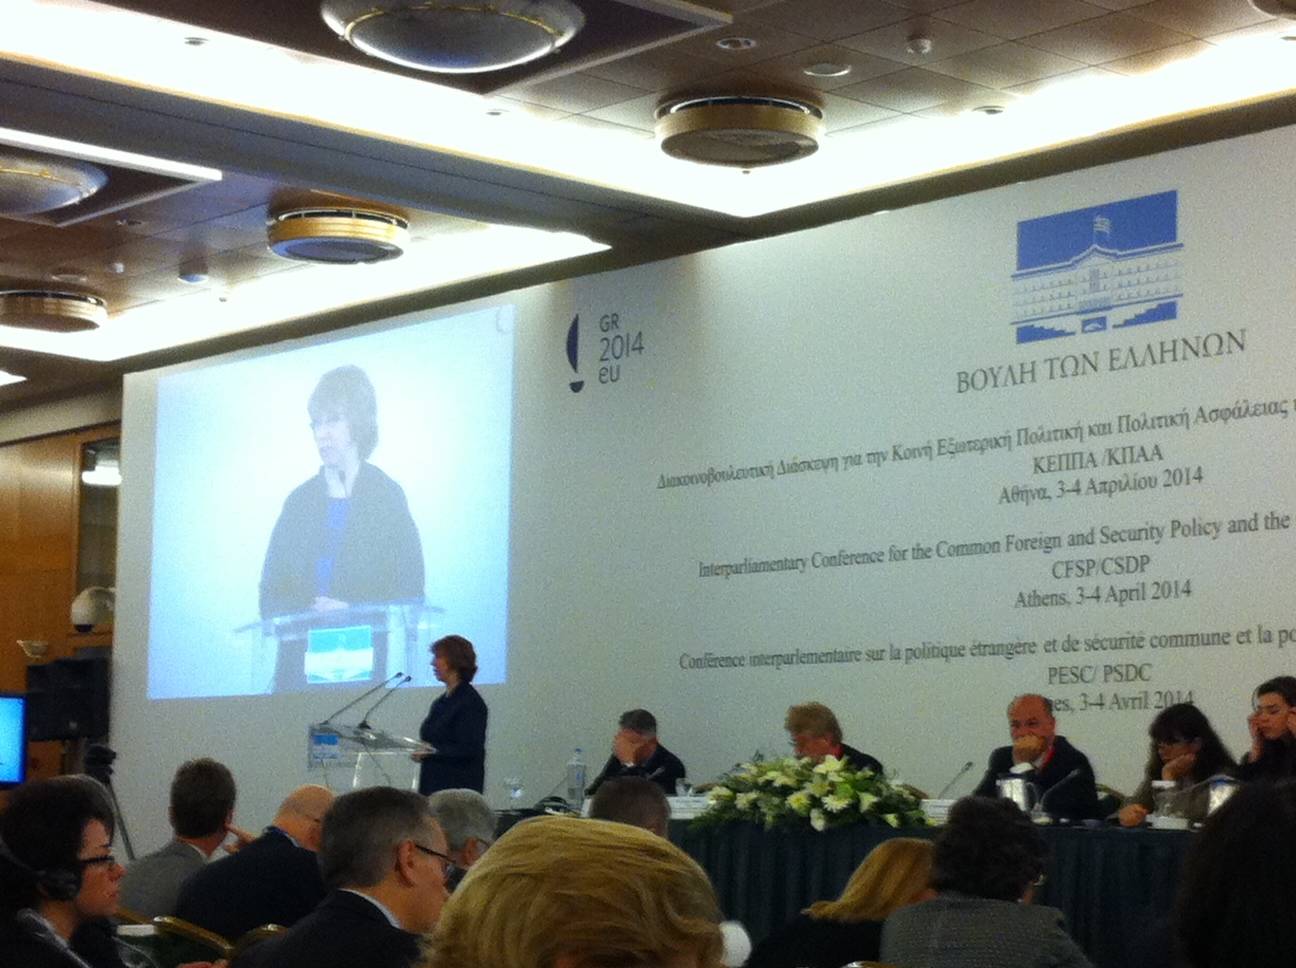 -	Hoge Vertegenwoordiger Catherine Ashton spreekt tijdens de conferentie over de prioriteiten in het buitenlands en veiligheidsbeleid van de EU